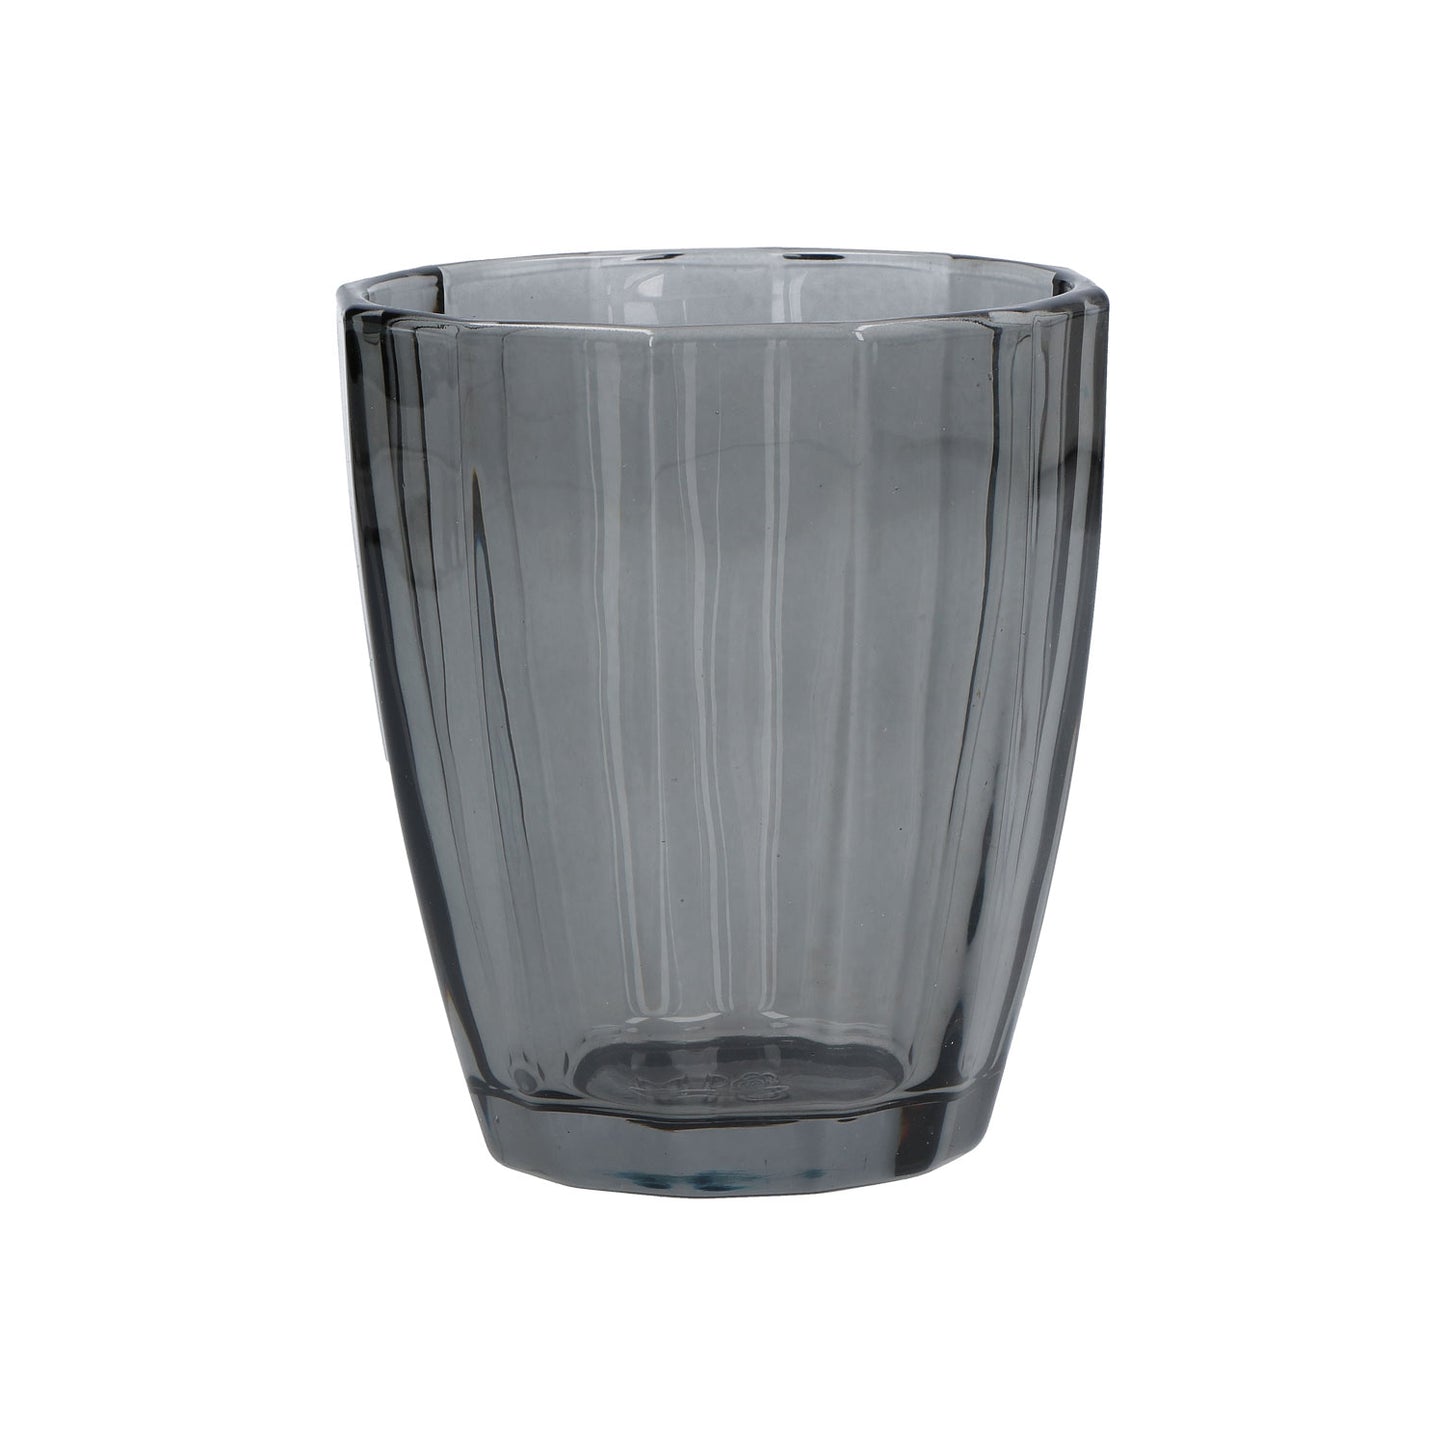 Confezione 6 bicchieri in vetro di colore fumo cc 320 - Ø 8,5 - h 10 cm. Lavabili in lavastoviglie. In negozio e online su tuttochic.it